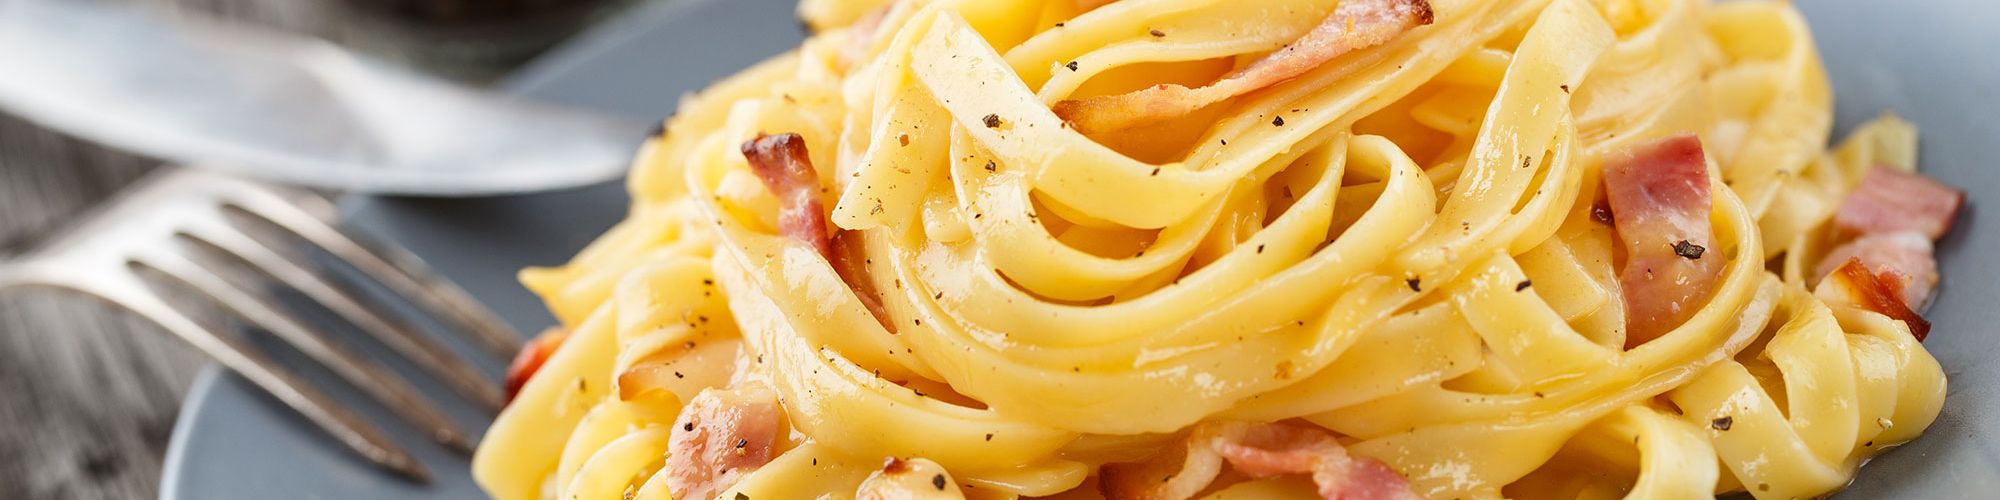 ricetta Tagliatelle alla carbonara con pasta fresca